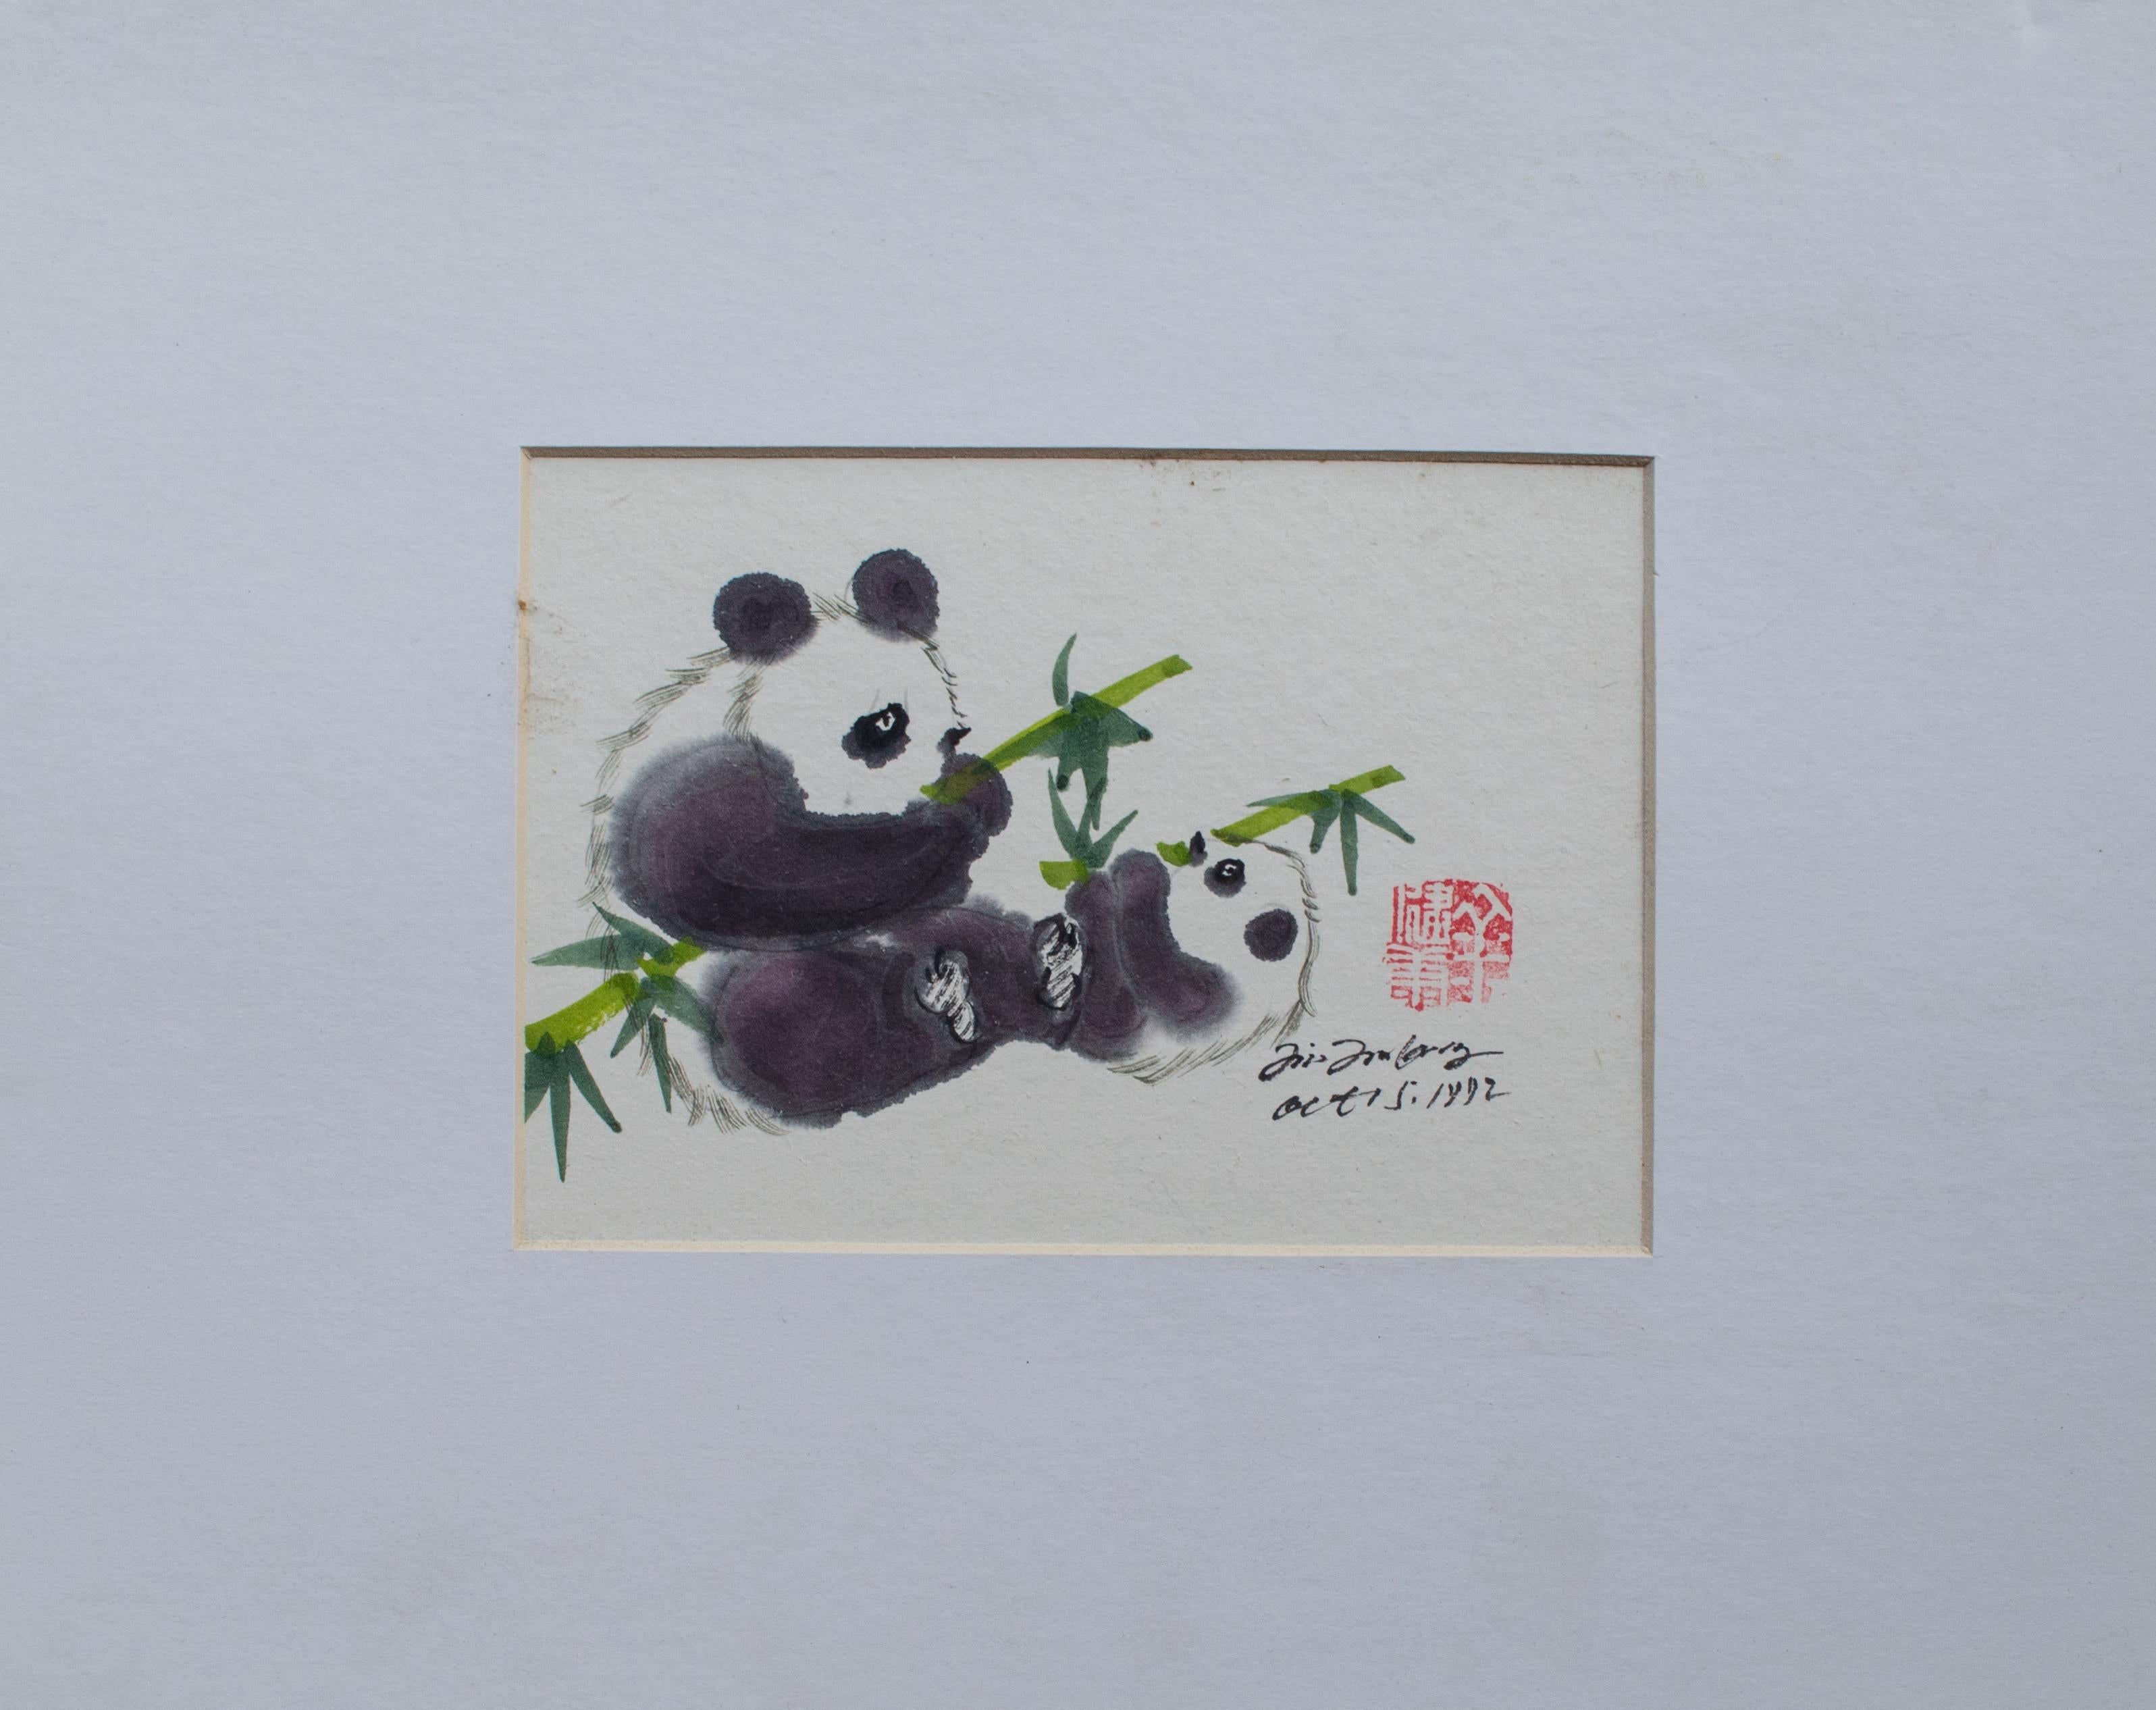 Schnörkelbare chinesische Aquarelle, signiert und datiert 1992 – Art von Unknown